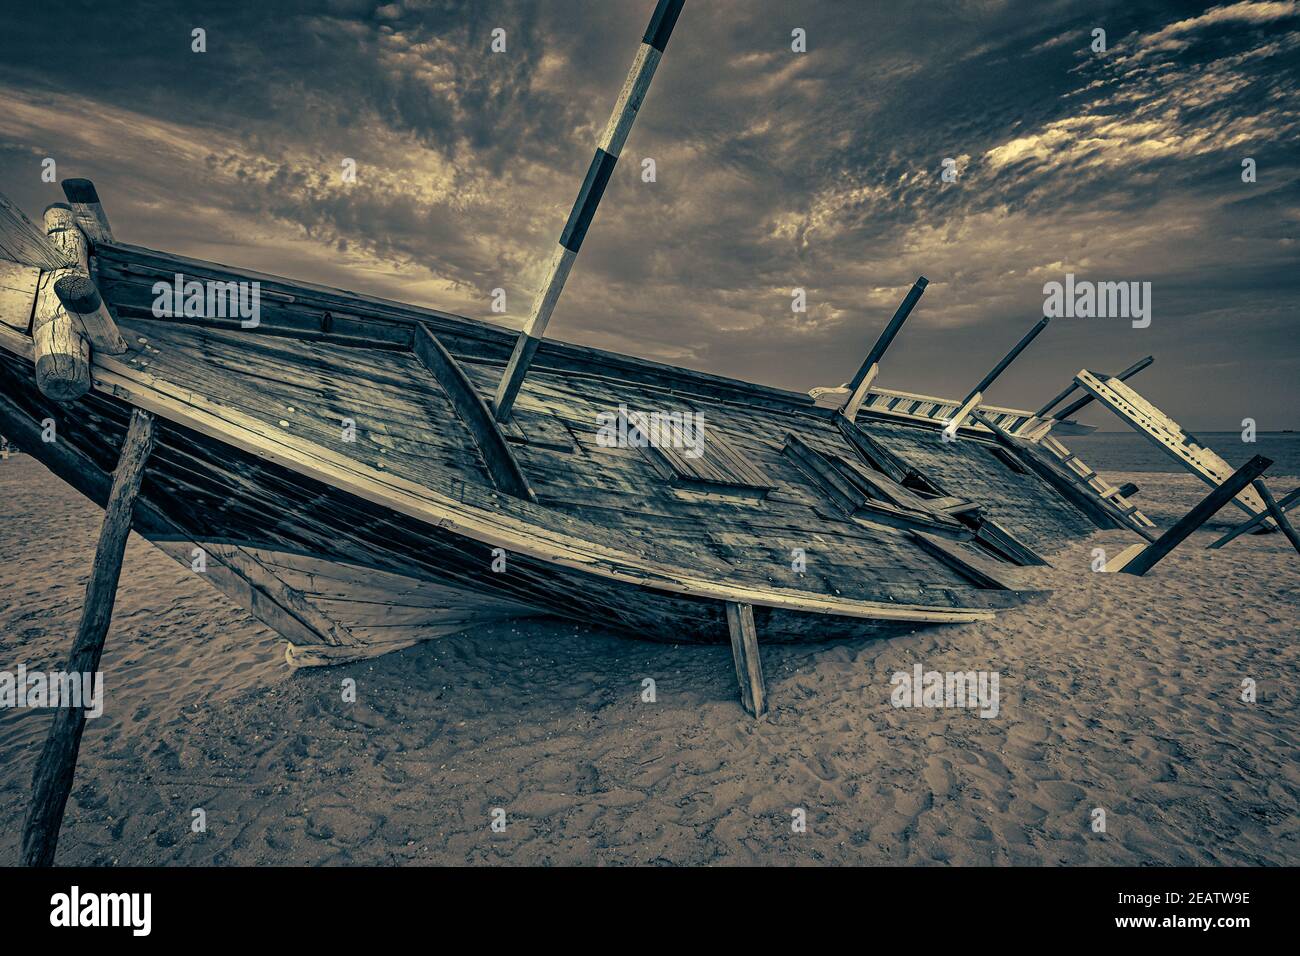 Vieux bateau arabe en bois (dhow) coincé sur la plage noire et une image blanche en gros plan avec des nuages dans le ciel Banque D'Images